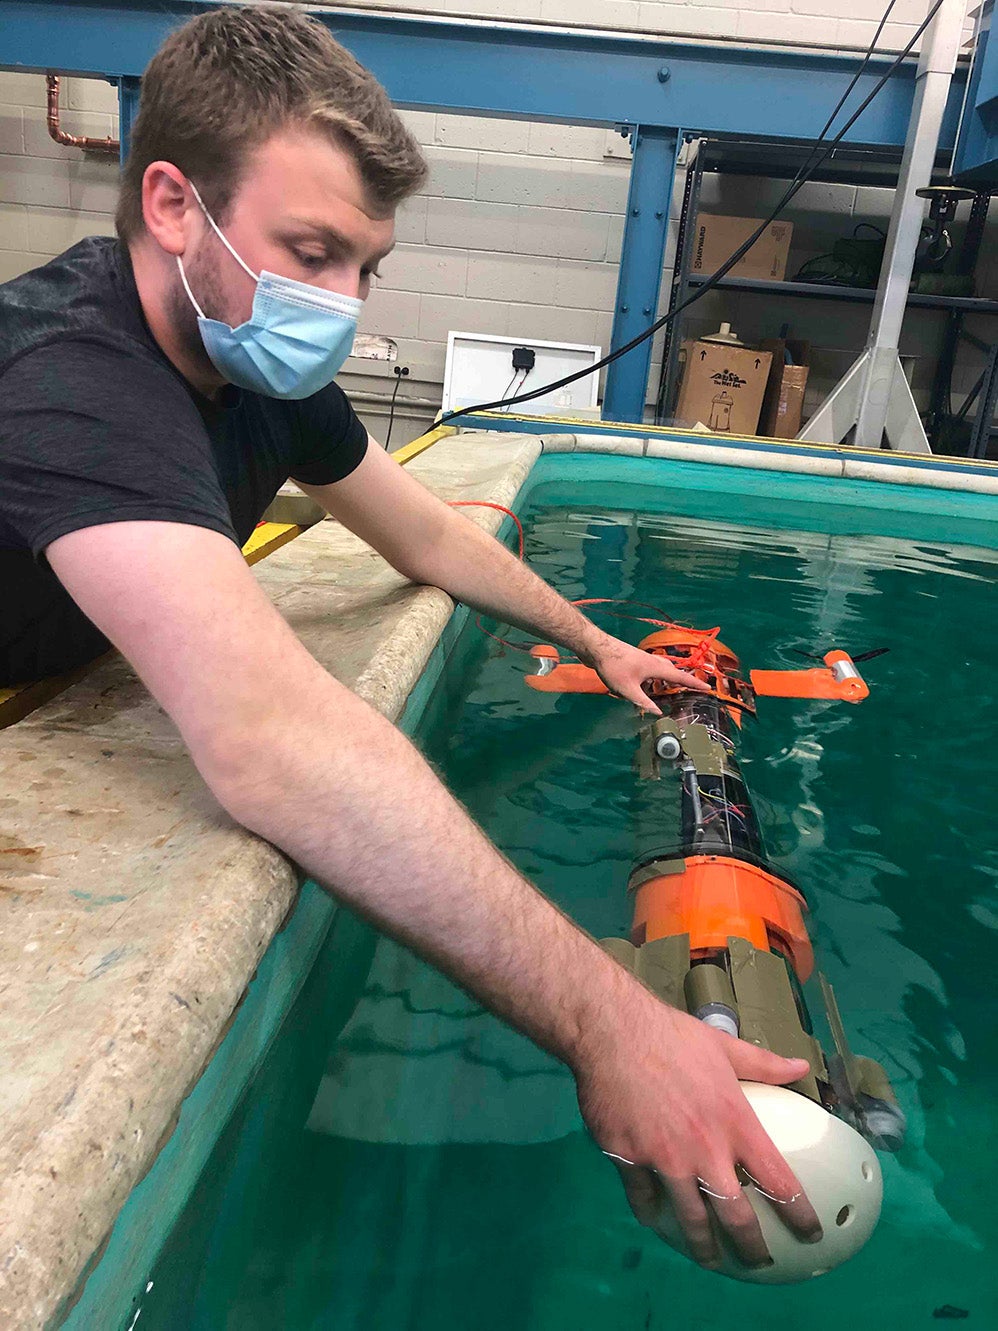 Raymond testing underwater vehicle